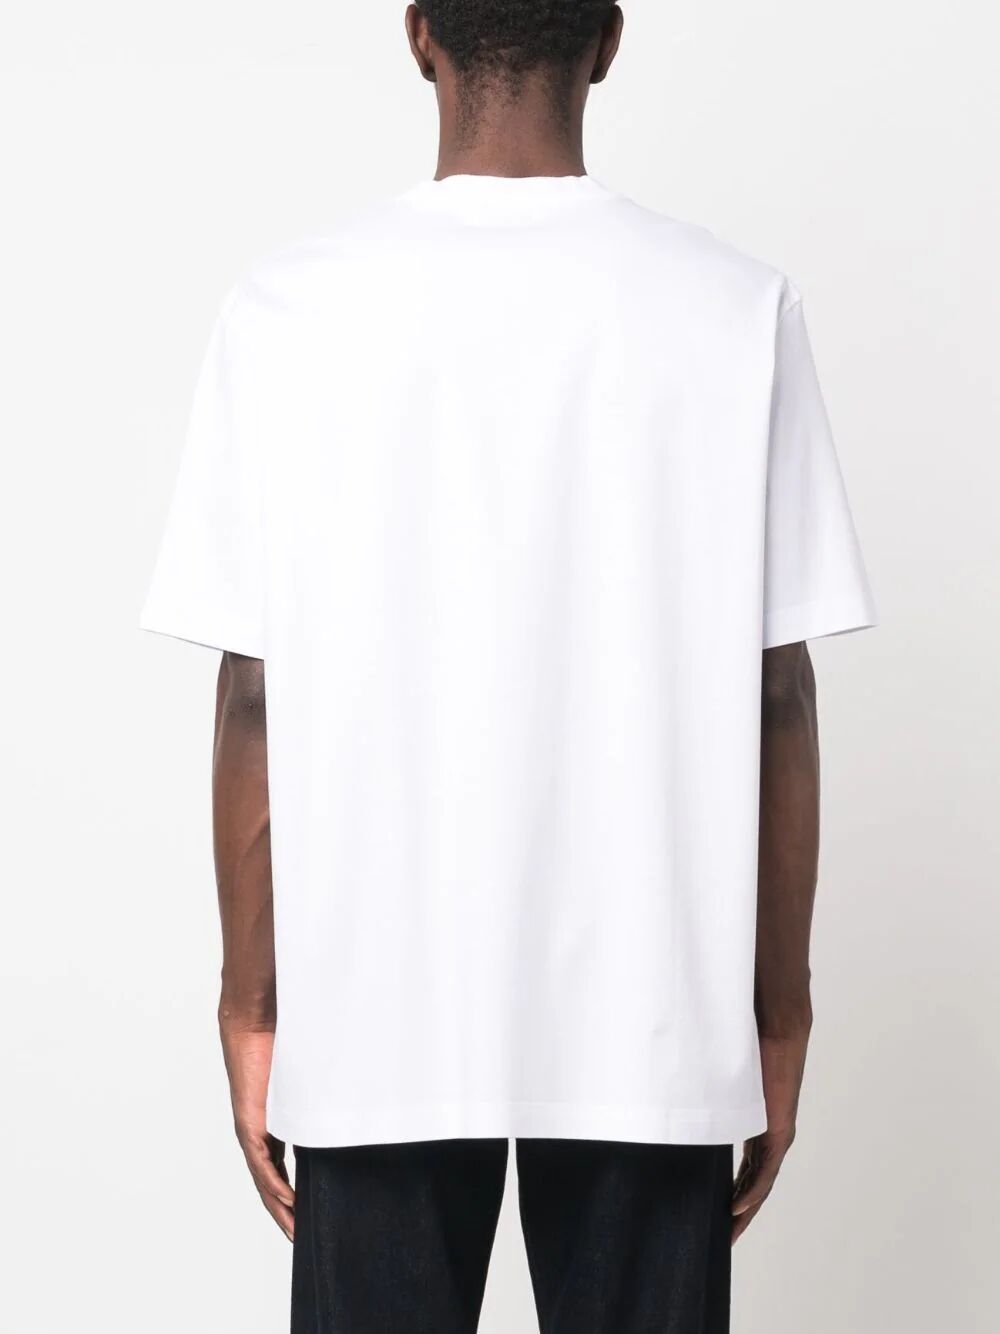 Shop Lanvin Paris Classic T-shirt In White